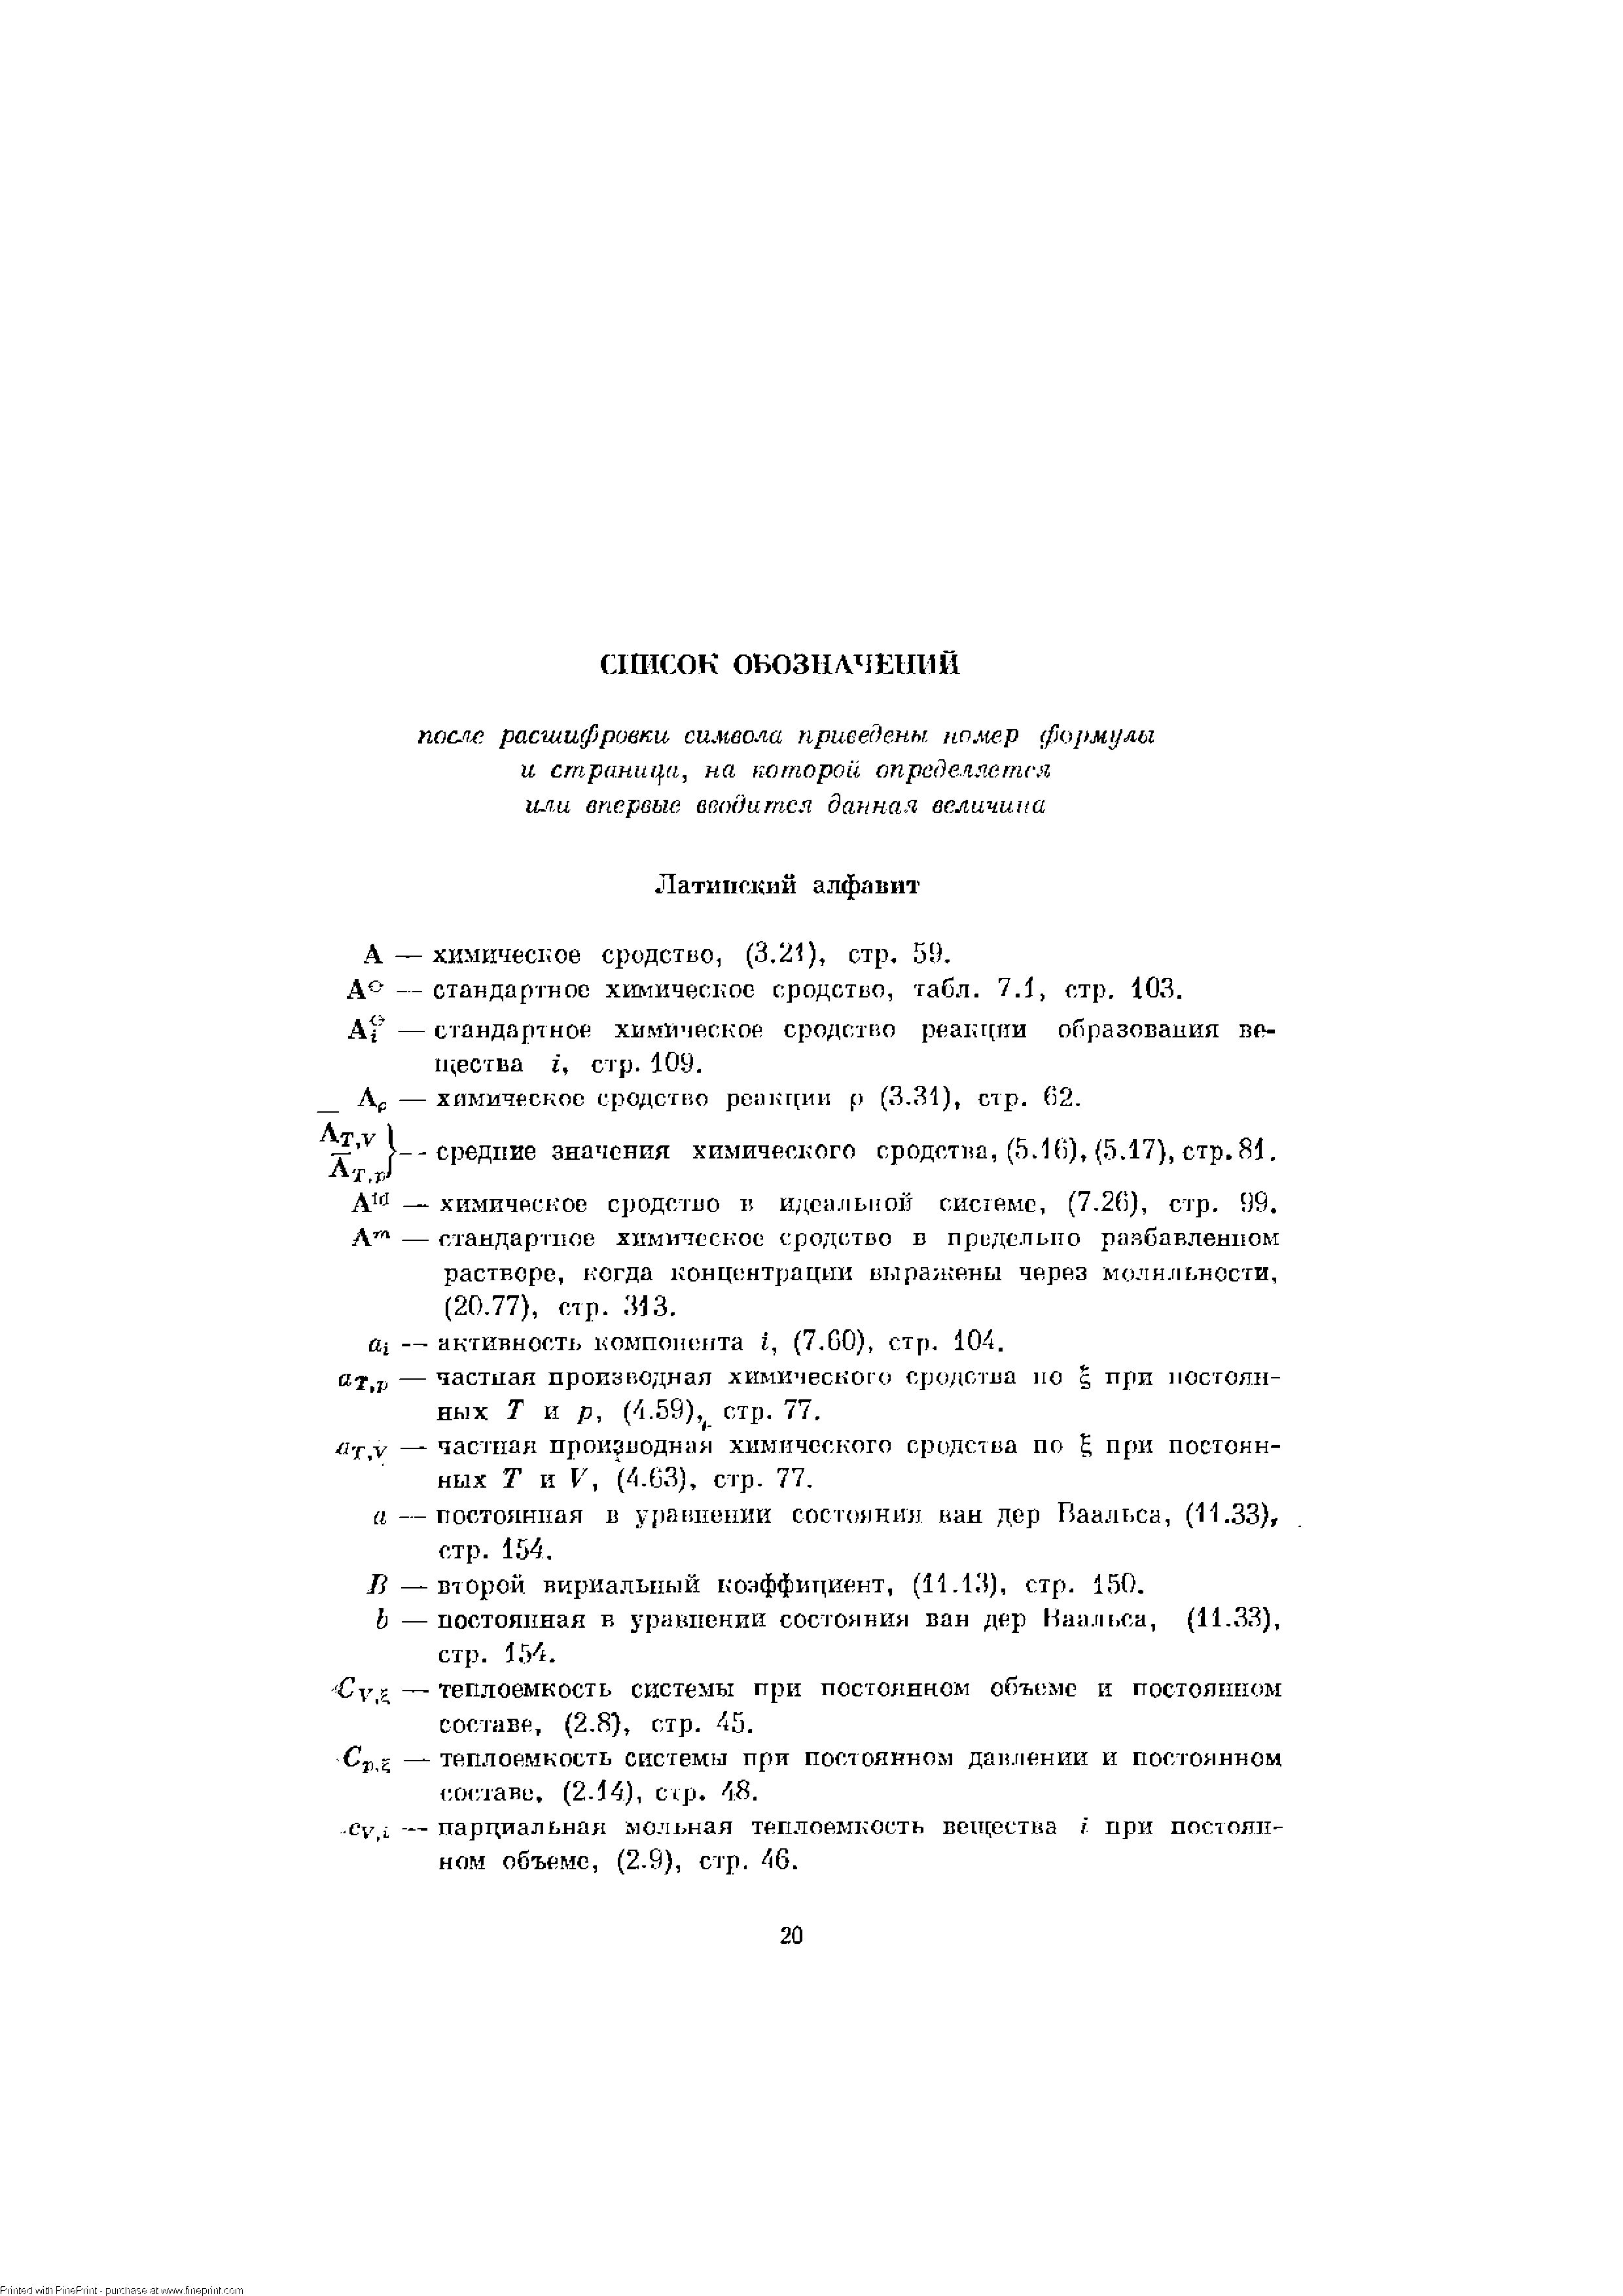 А — химическое сродство, (3,21), стр. 59. до — стандартное химическое сродство, табл. 7.1, стр. 103.